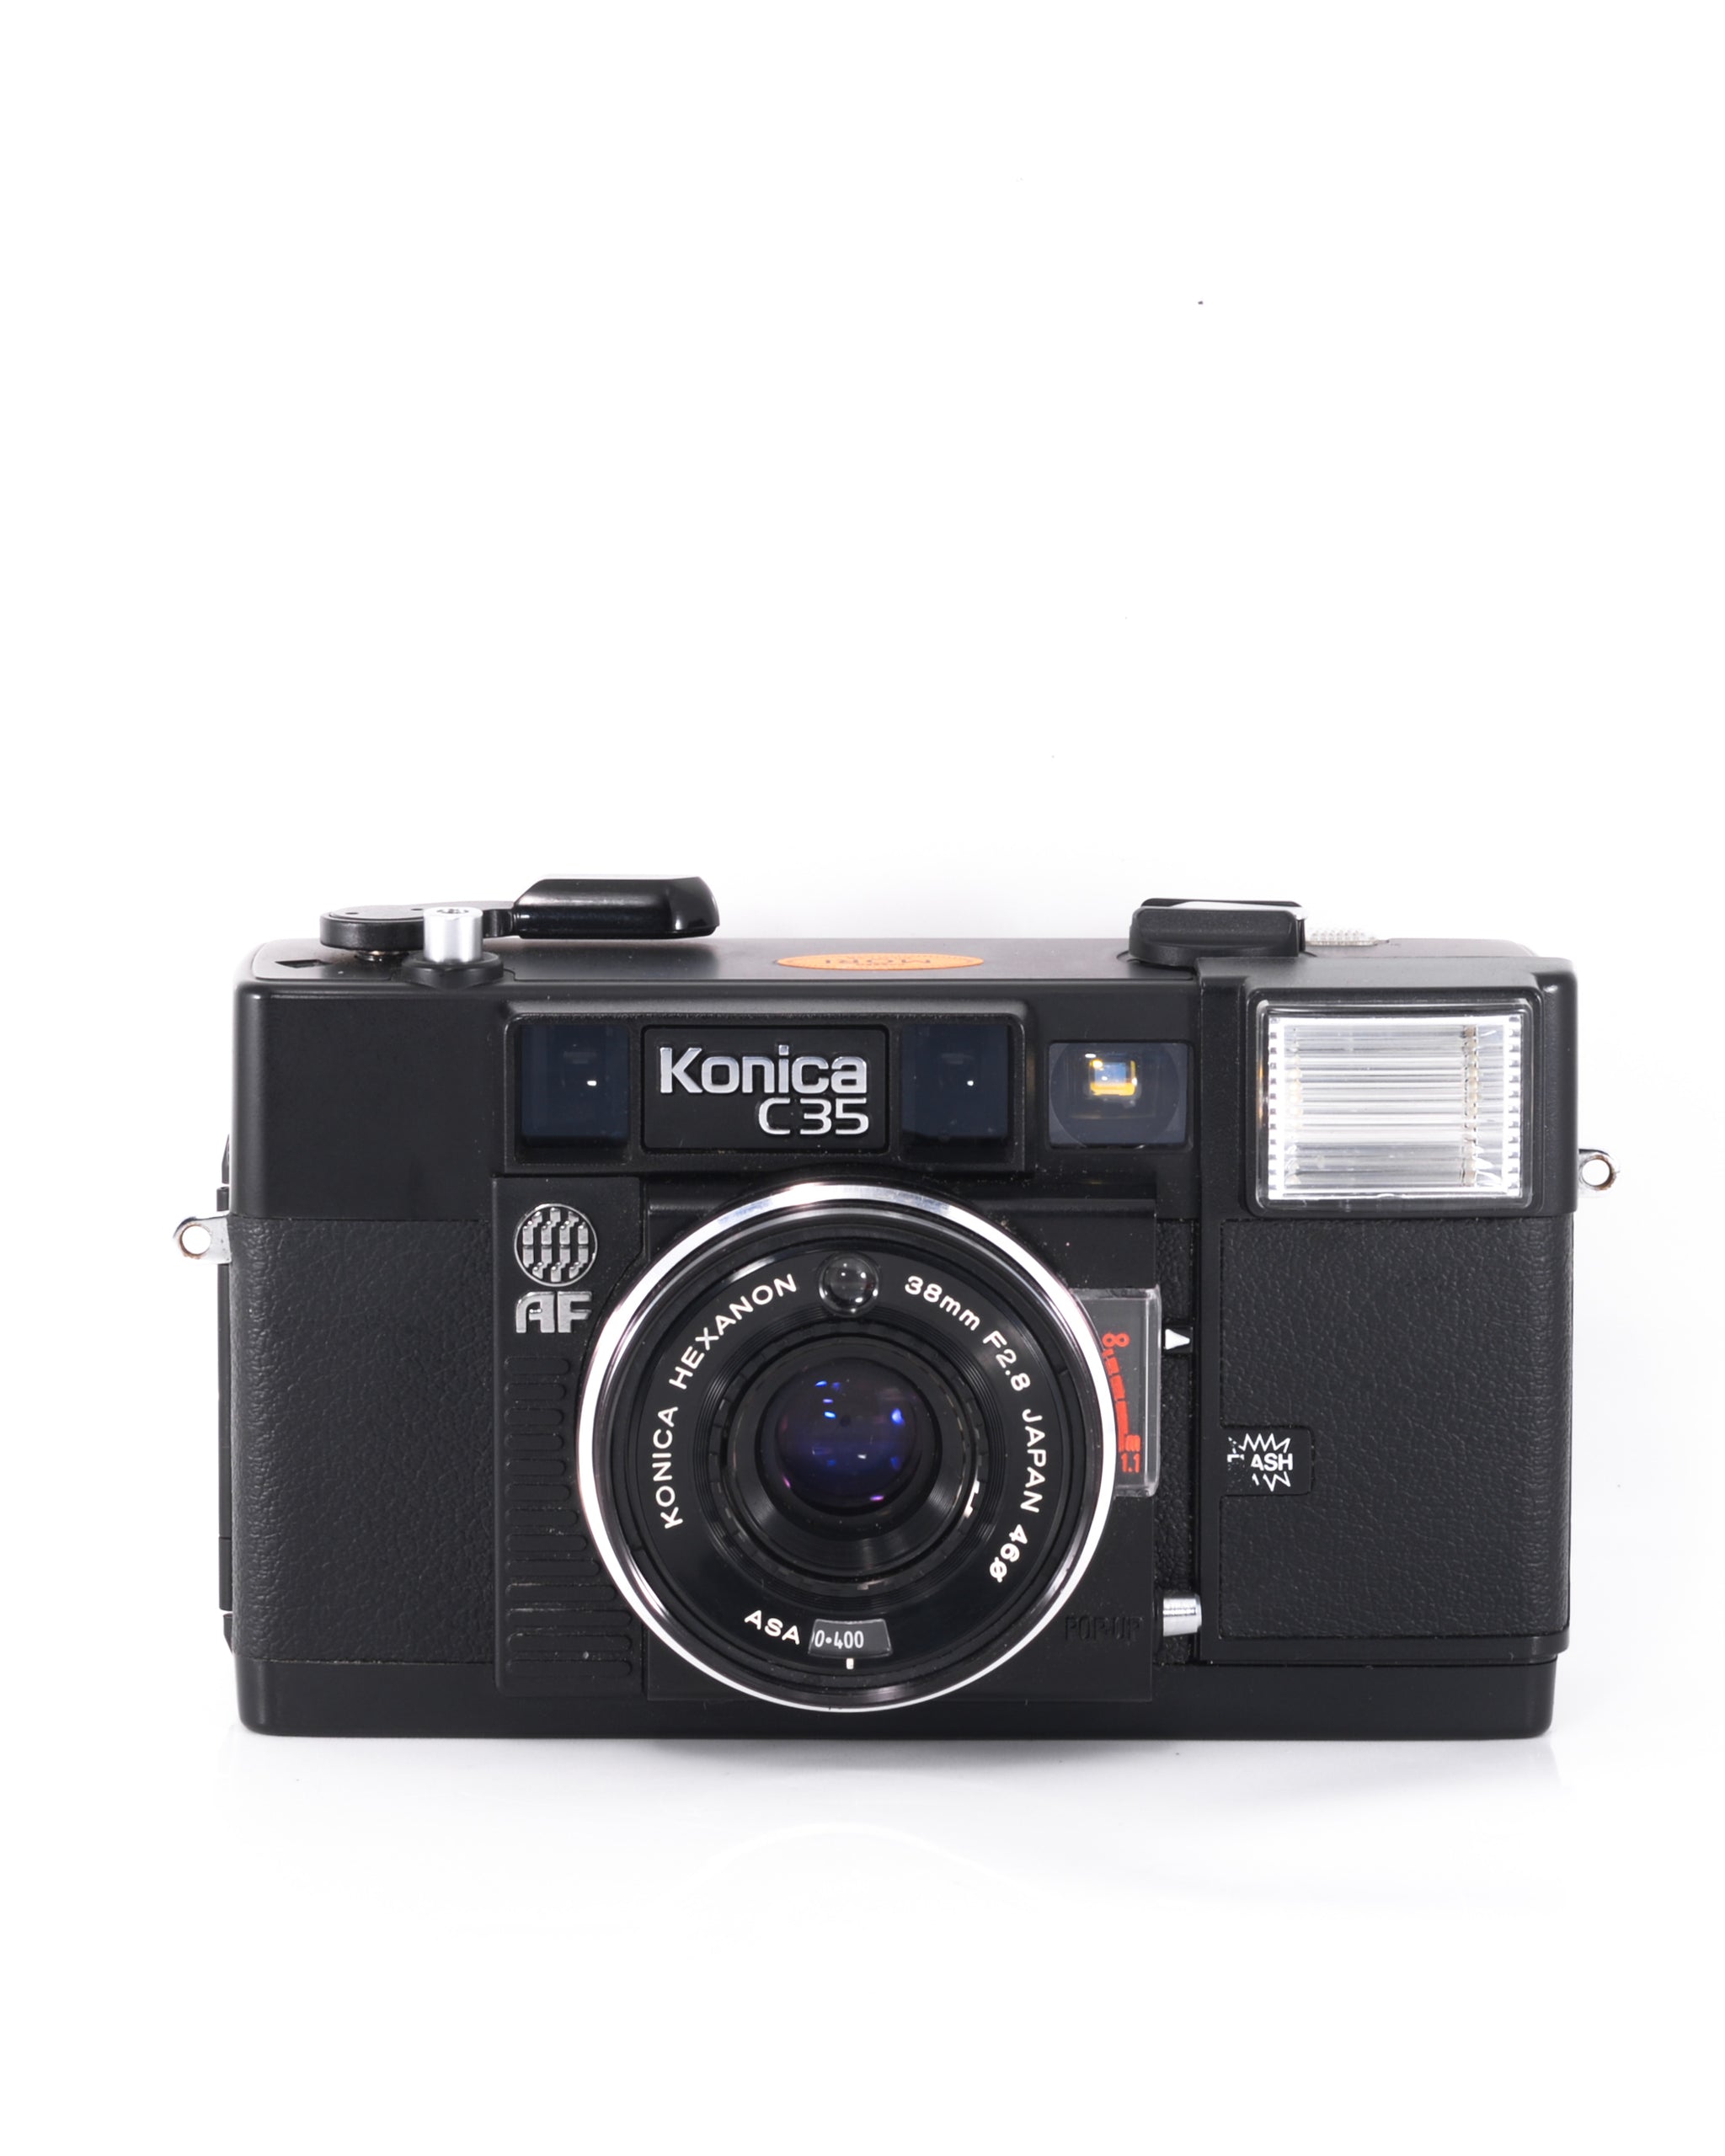 Konica C35 AF 35mm rangefinder camera with 38mm f2.8 lens